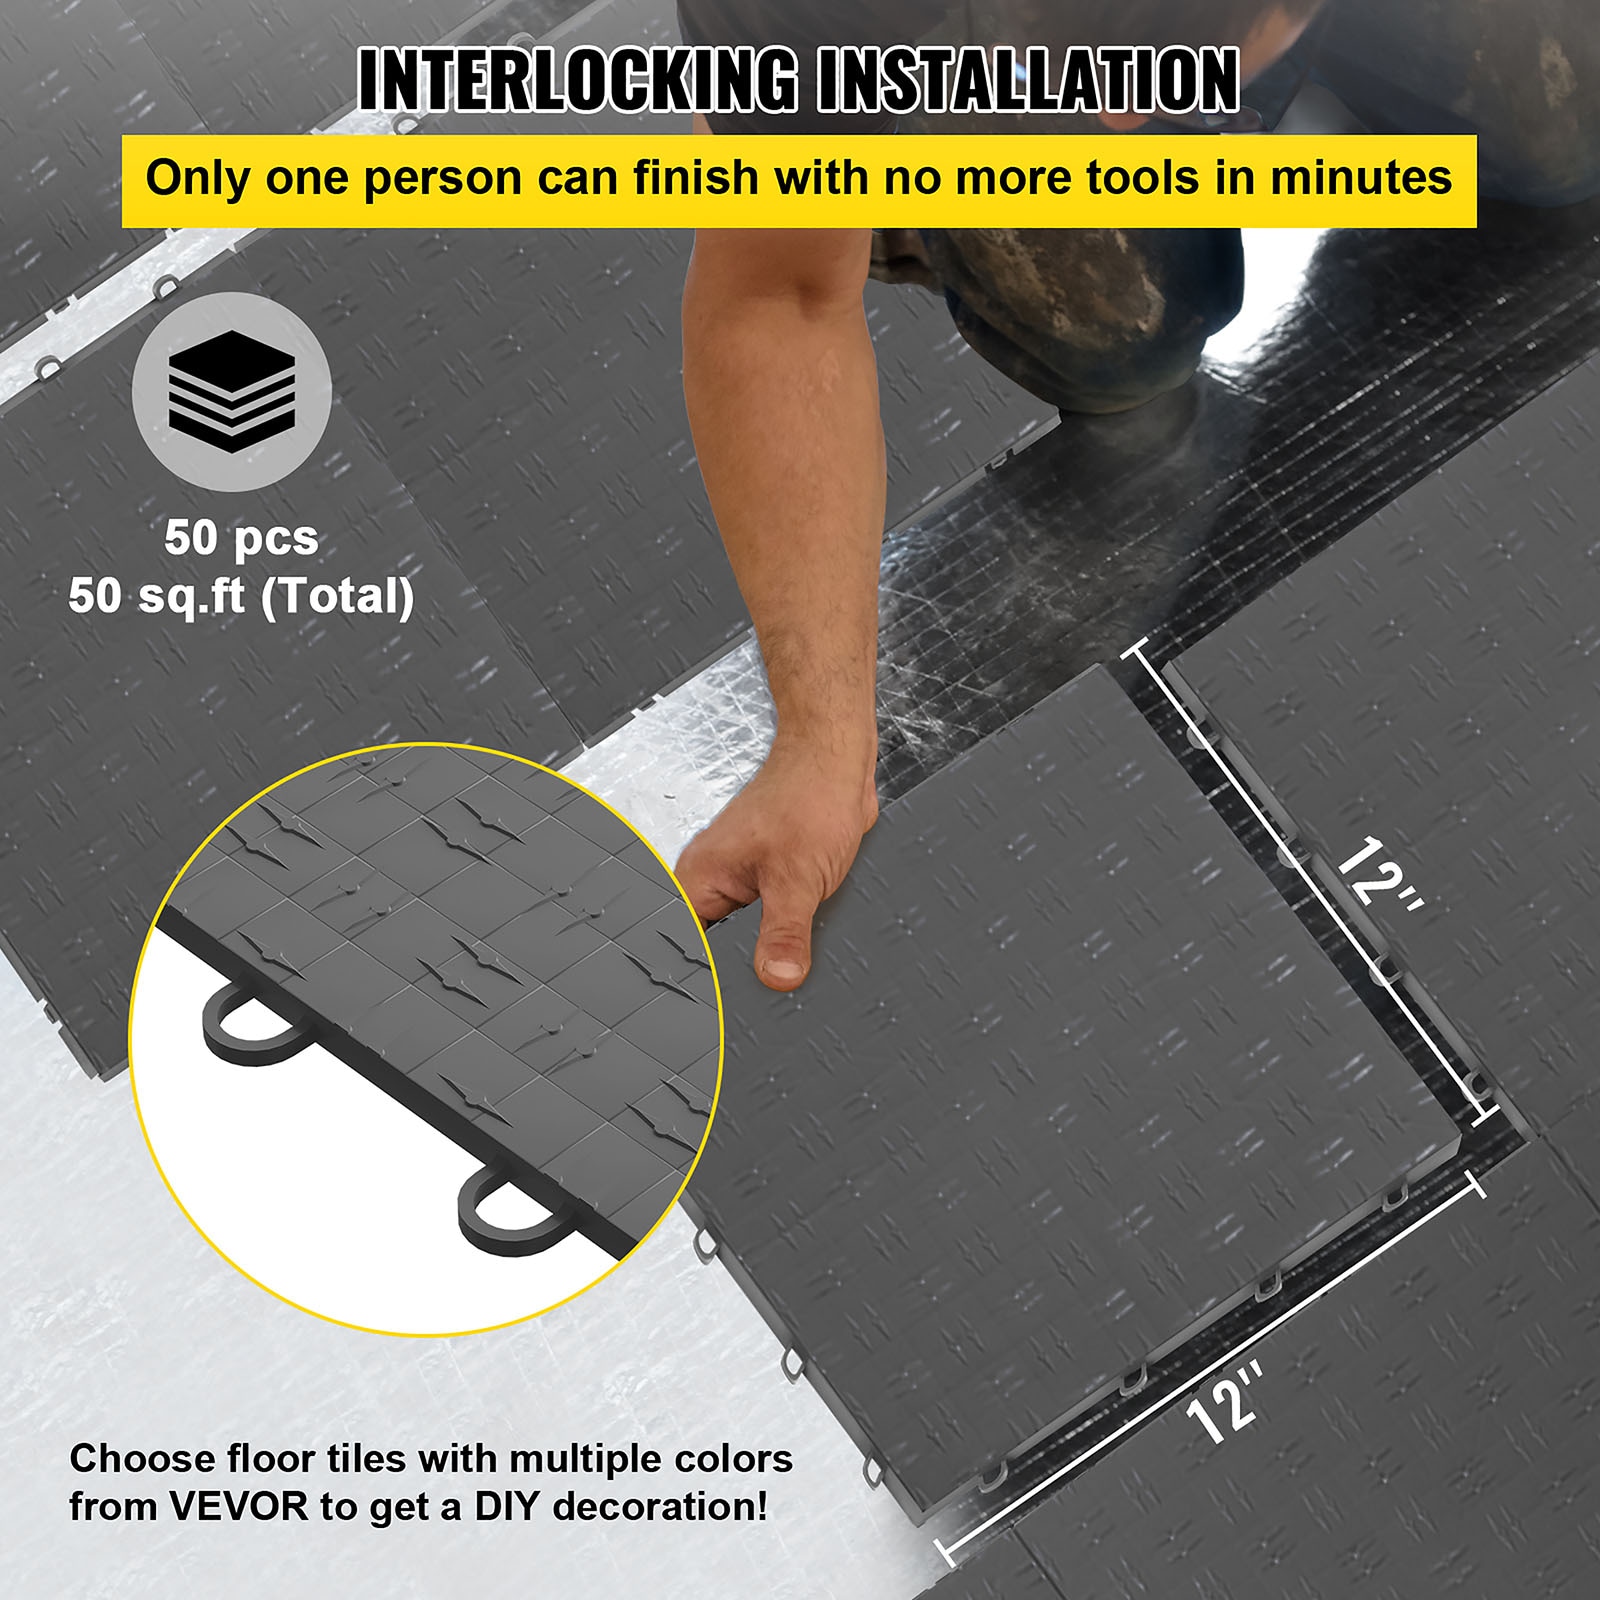 Grooved Garage Floor Mat